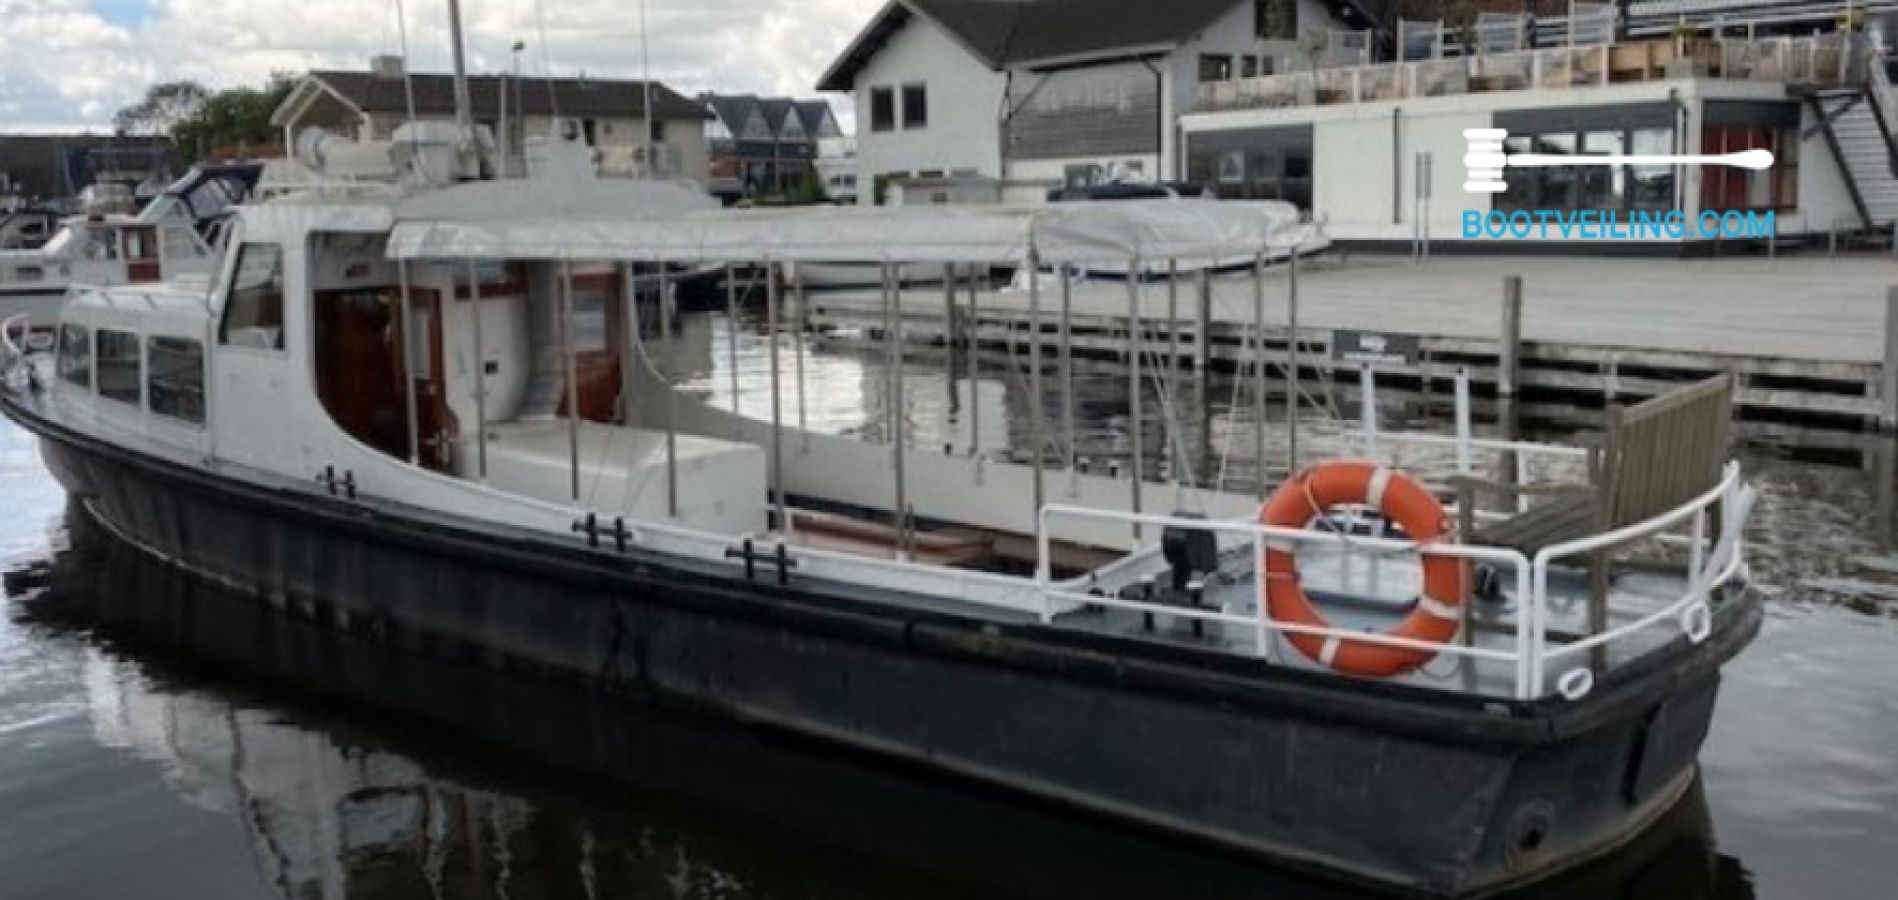 Schrijfmachine Jet getrouwd Duitse Patrouilleboot - 14.95 M - Motorjacht te koop - Bootveiling.com